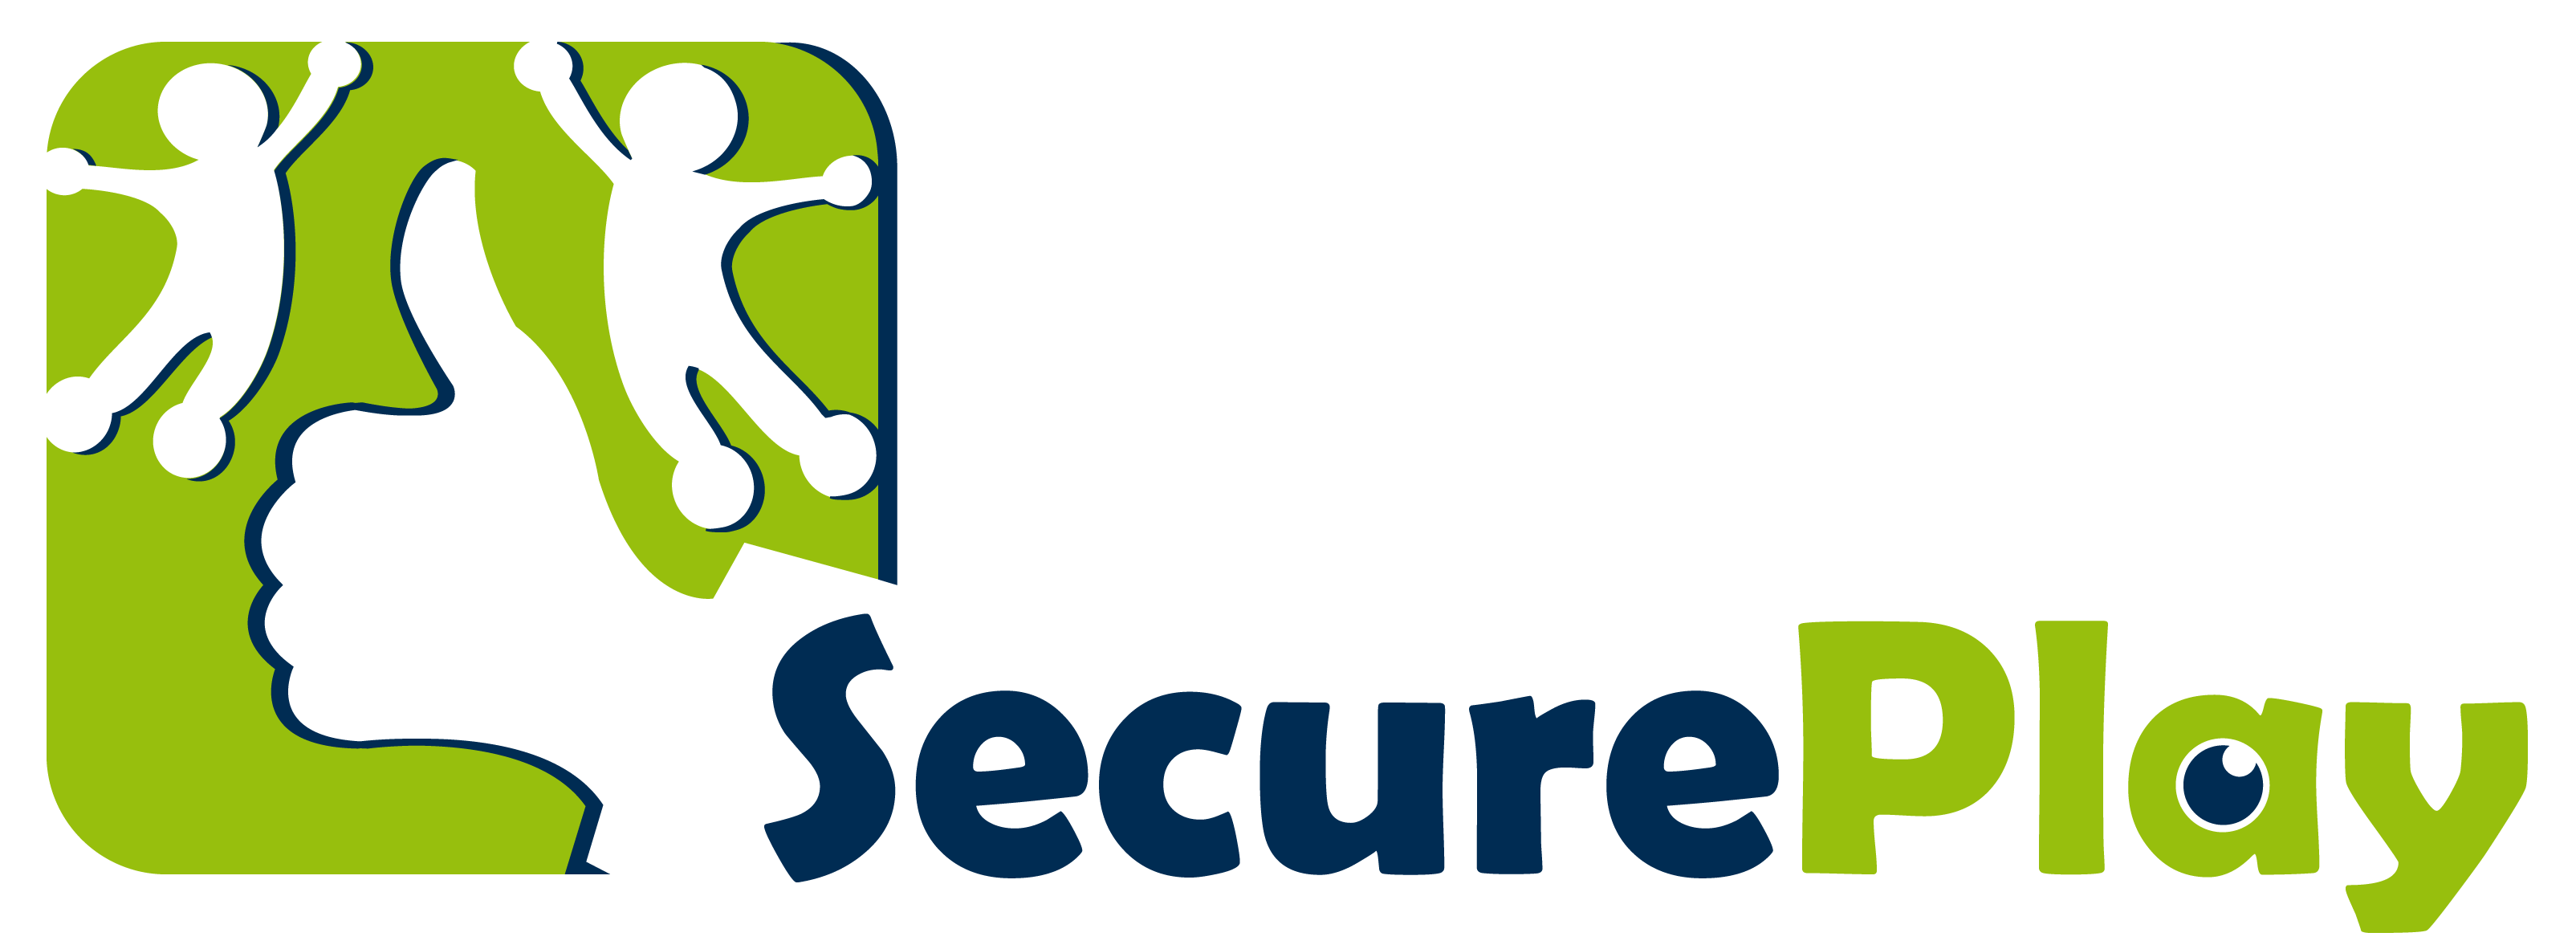 SecurePlay logo